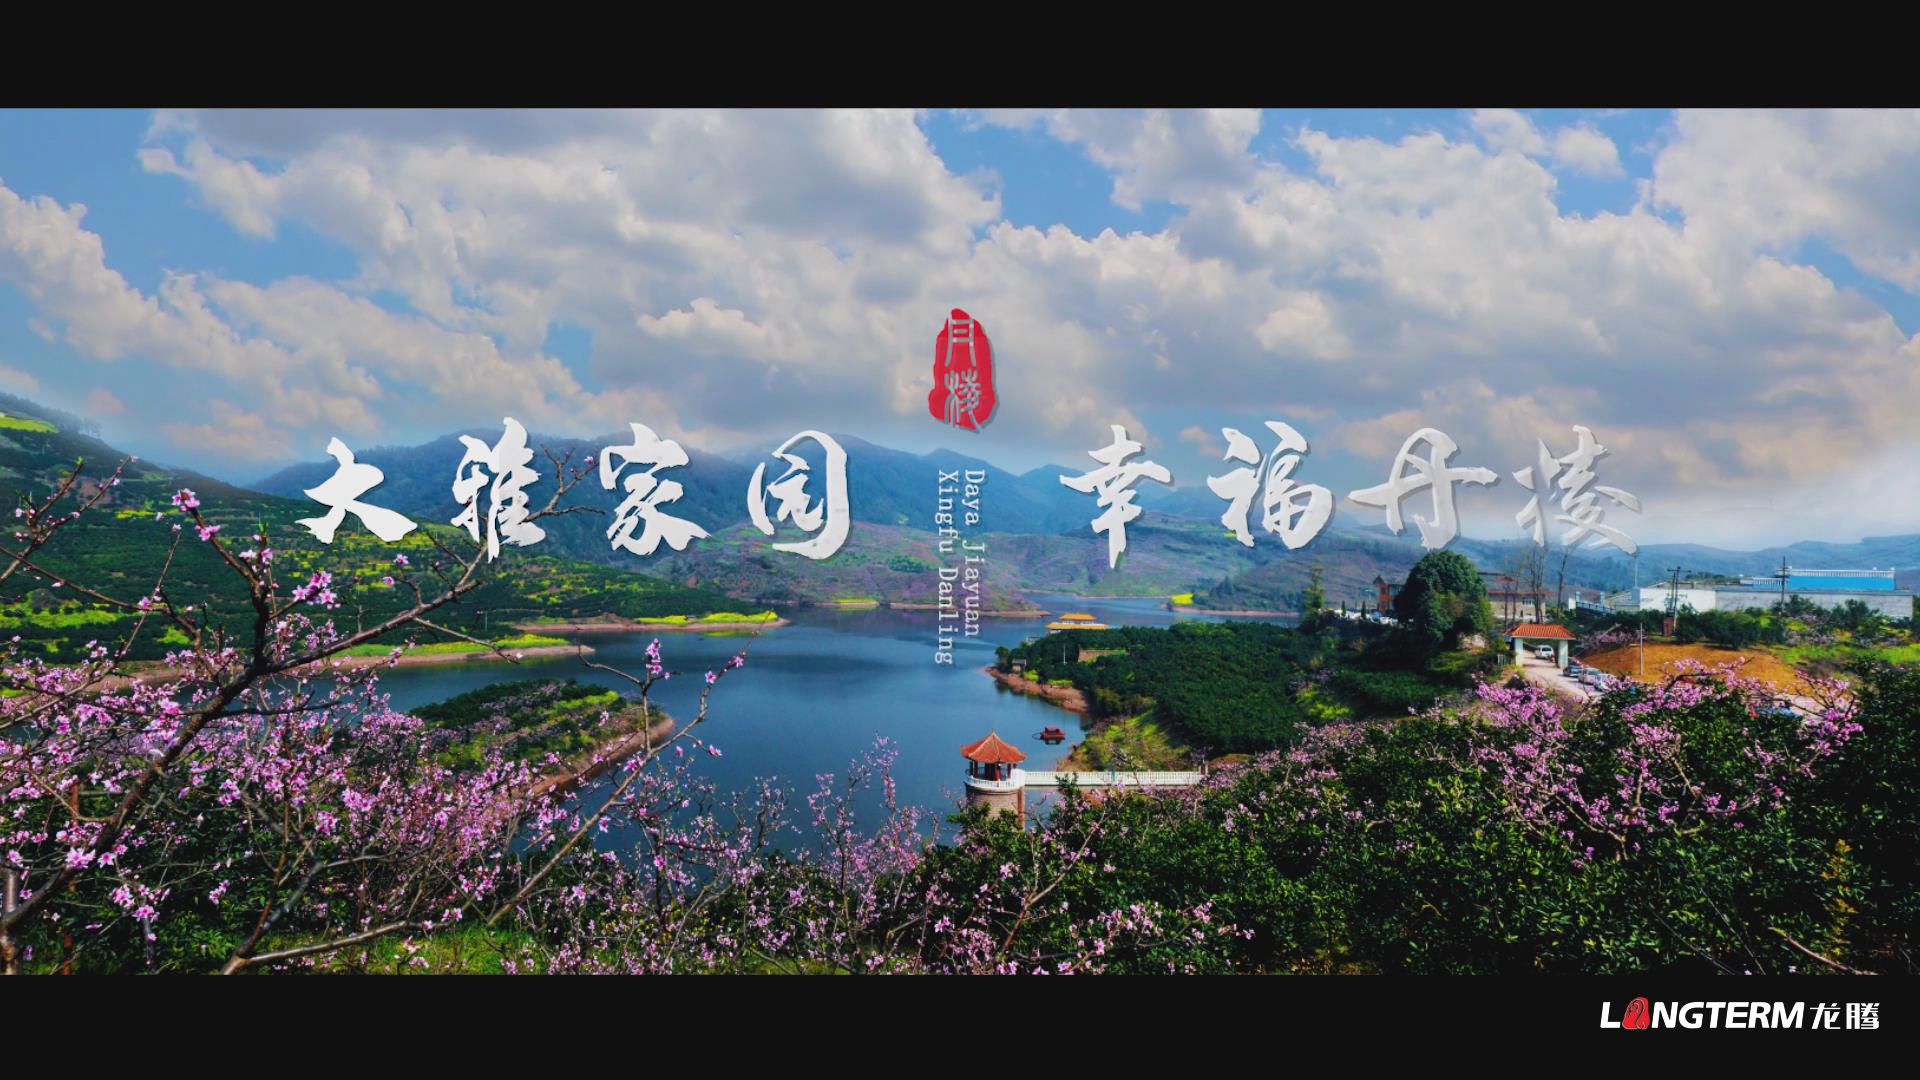 眉山市丹棱县乡村振兴形象宣传片《大雅家园 幸福丹棱》